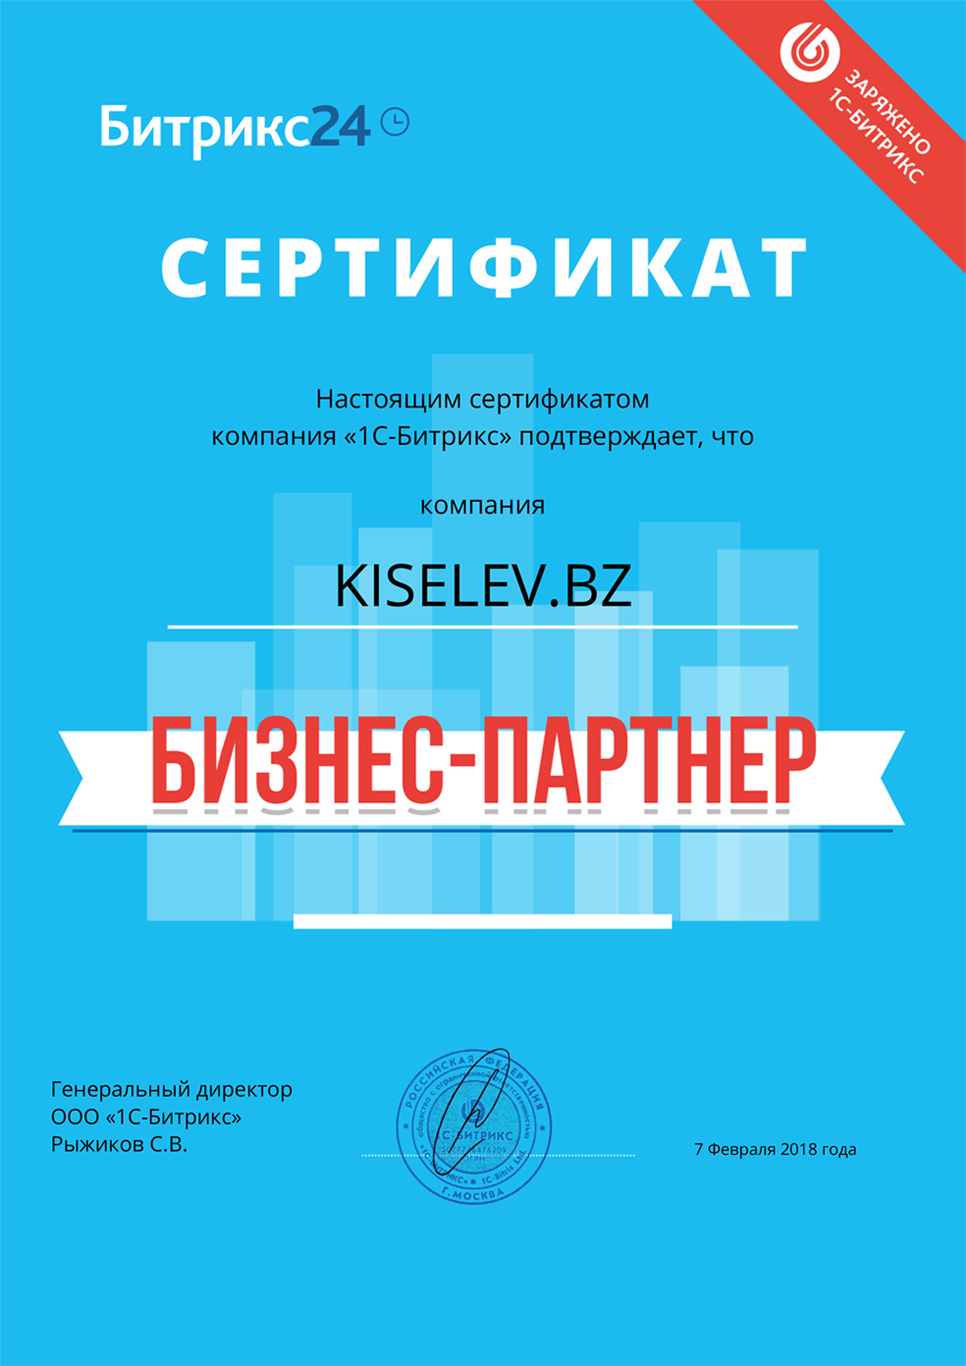 Сертификат партнёра по АМОСРМ в Болгаре